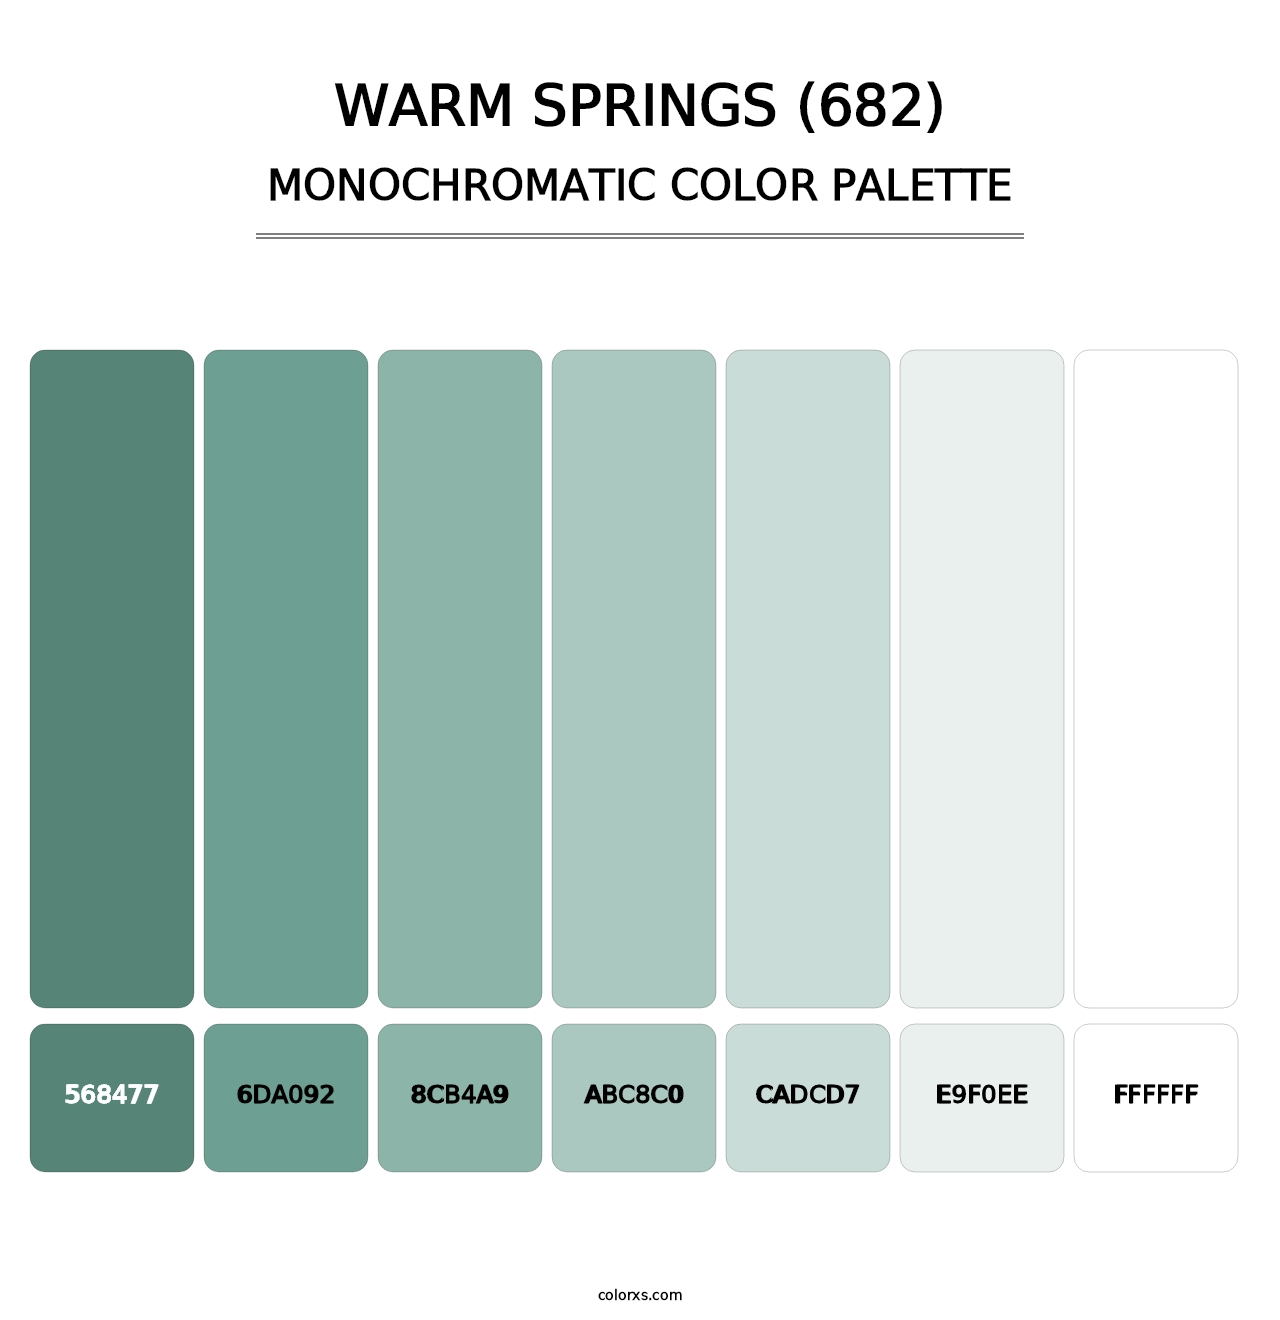 Warm Springs (682) - Monochromatic Color Palette